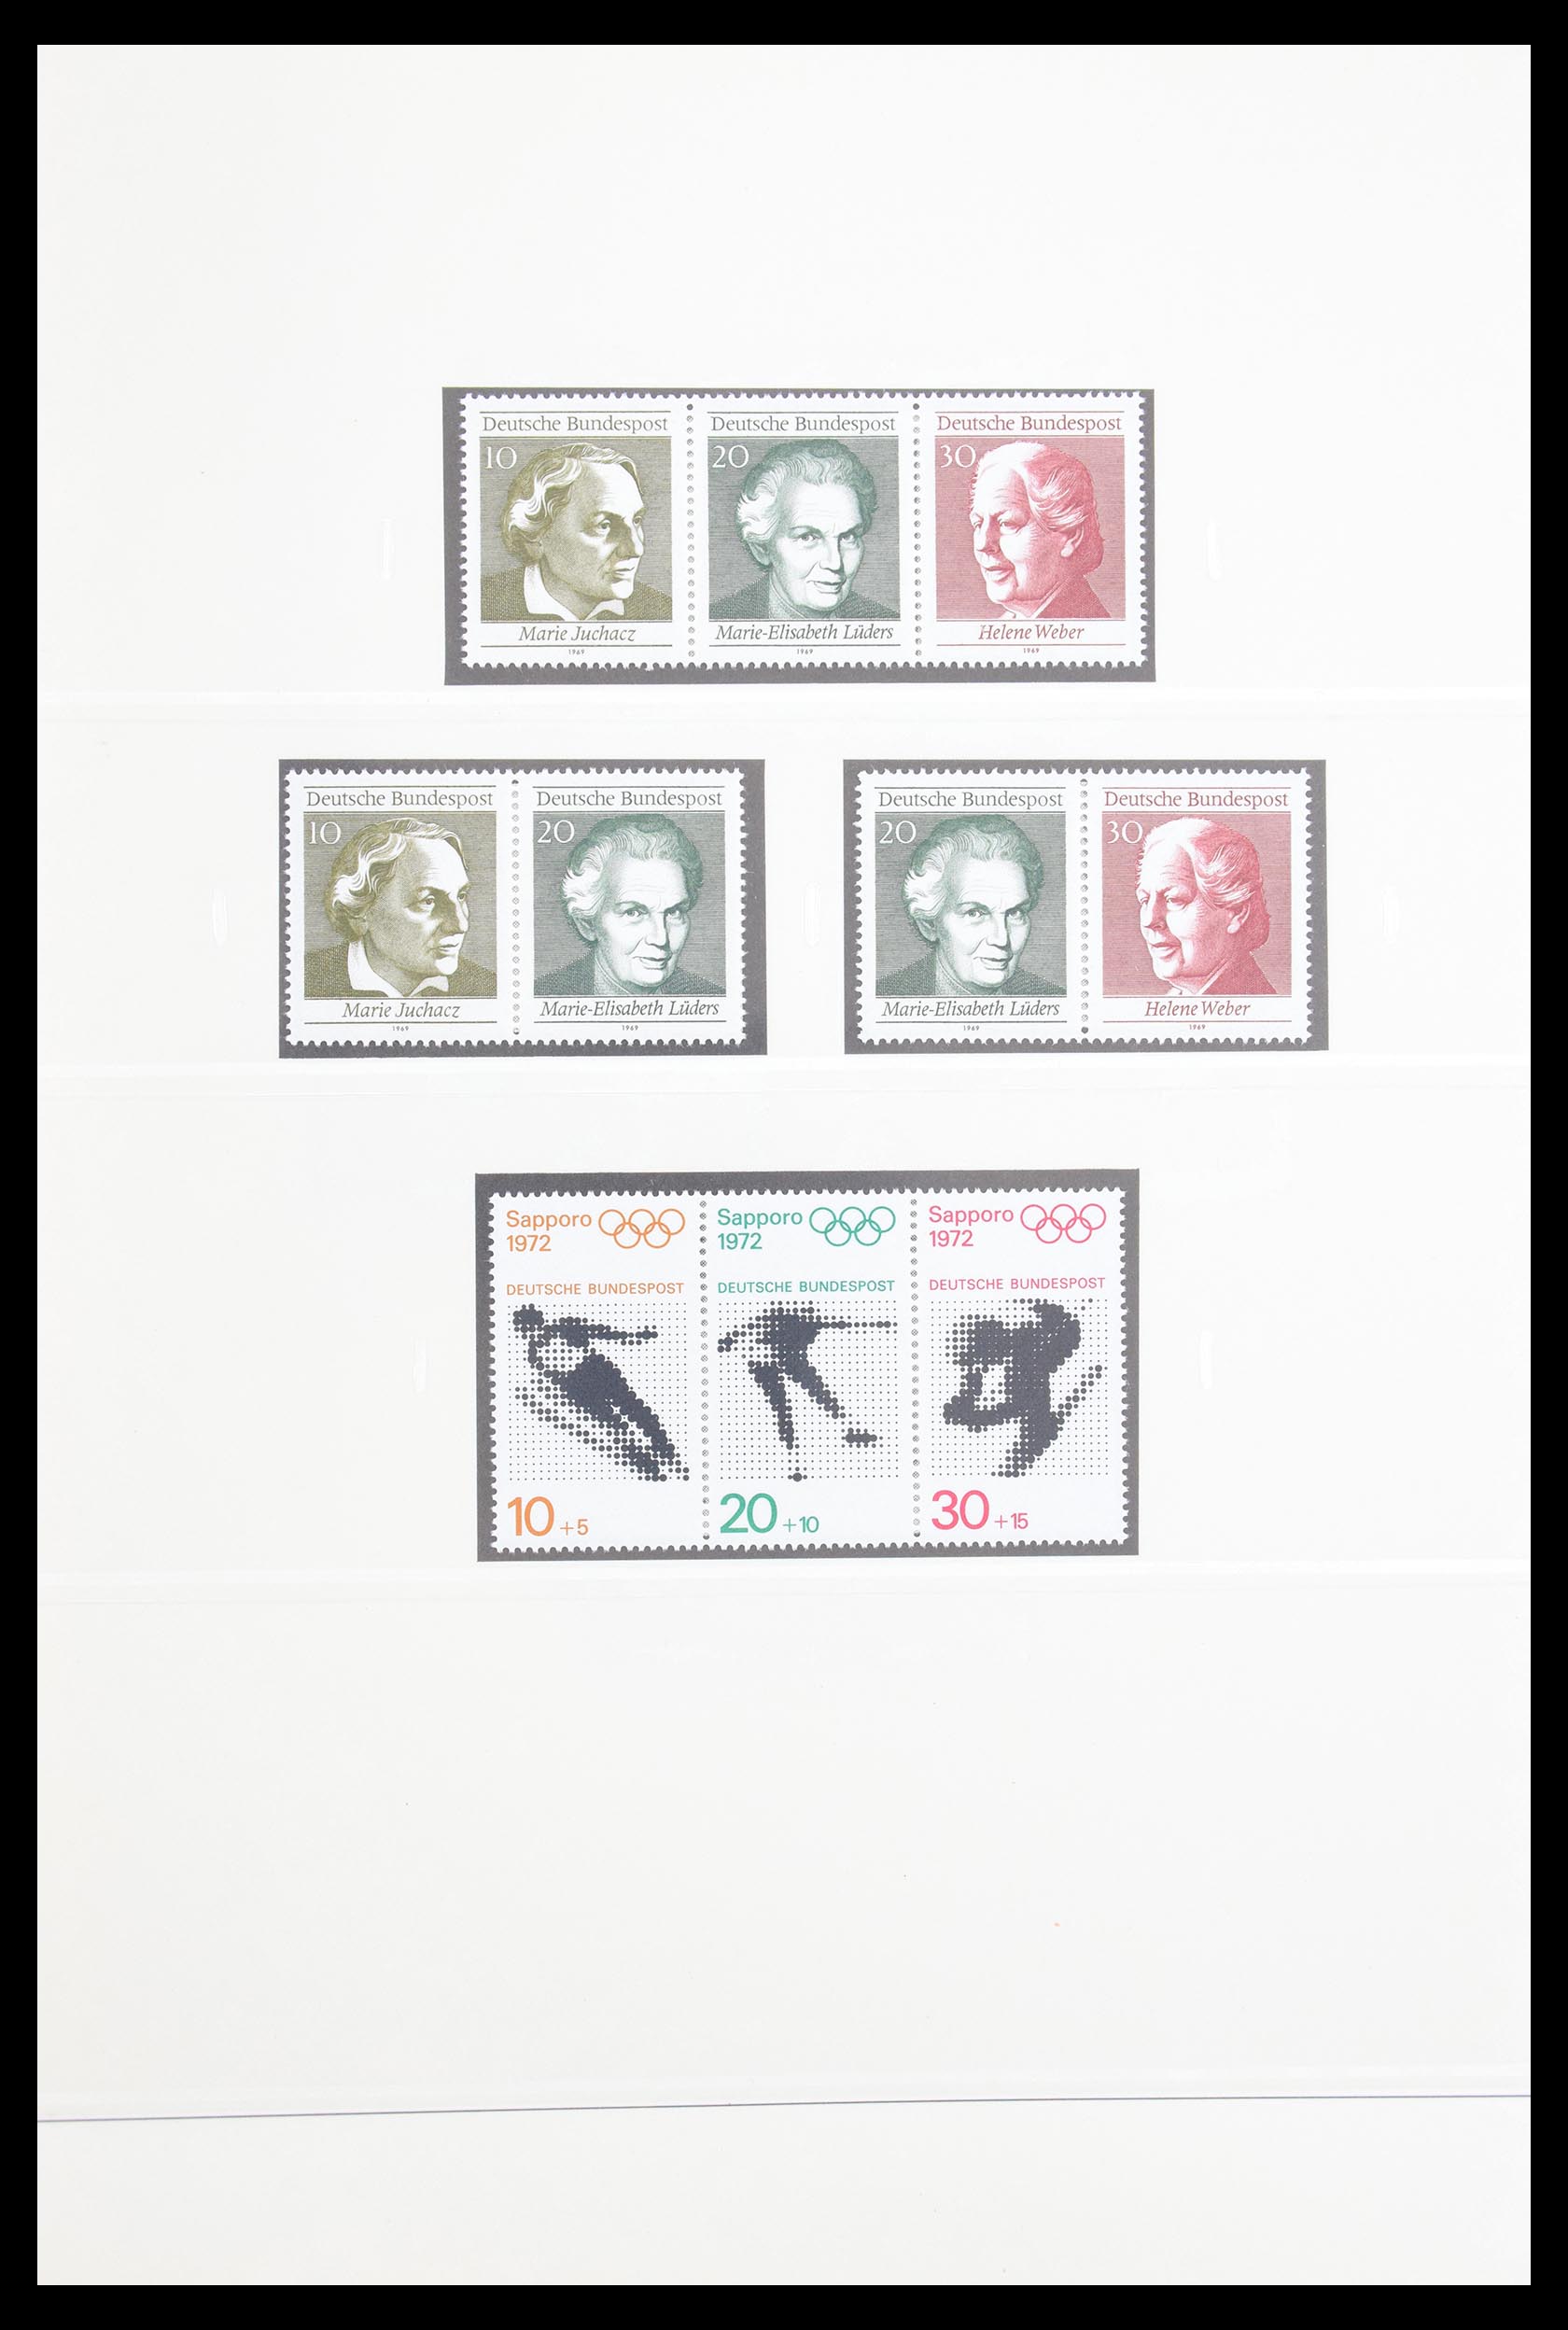 30605 027 - 30605 Bundespost combinations 1951-1974.